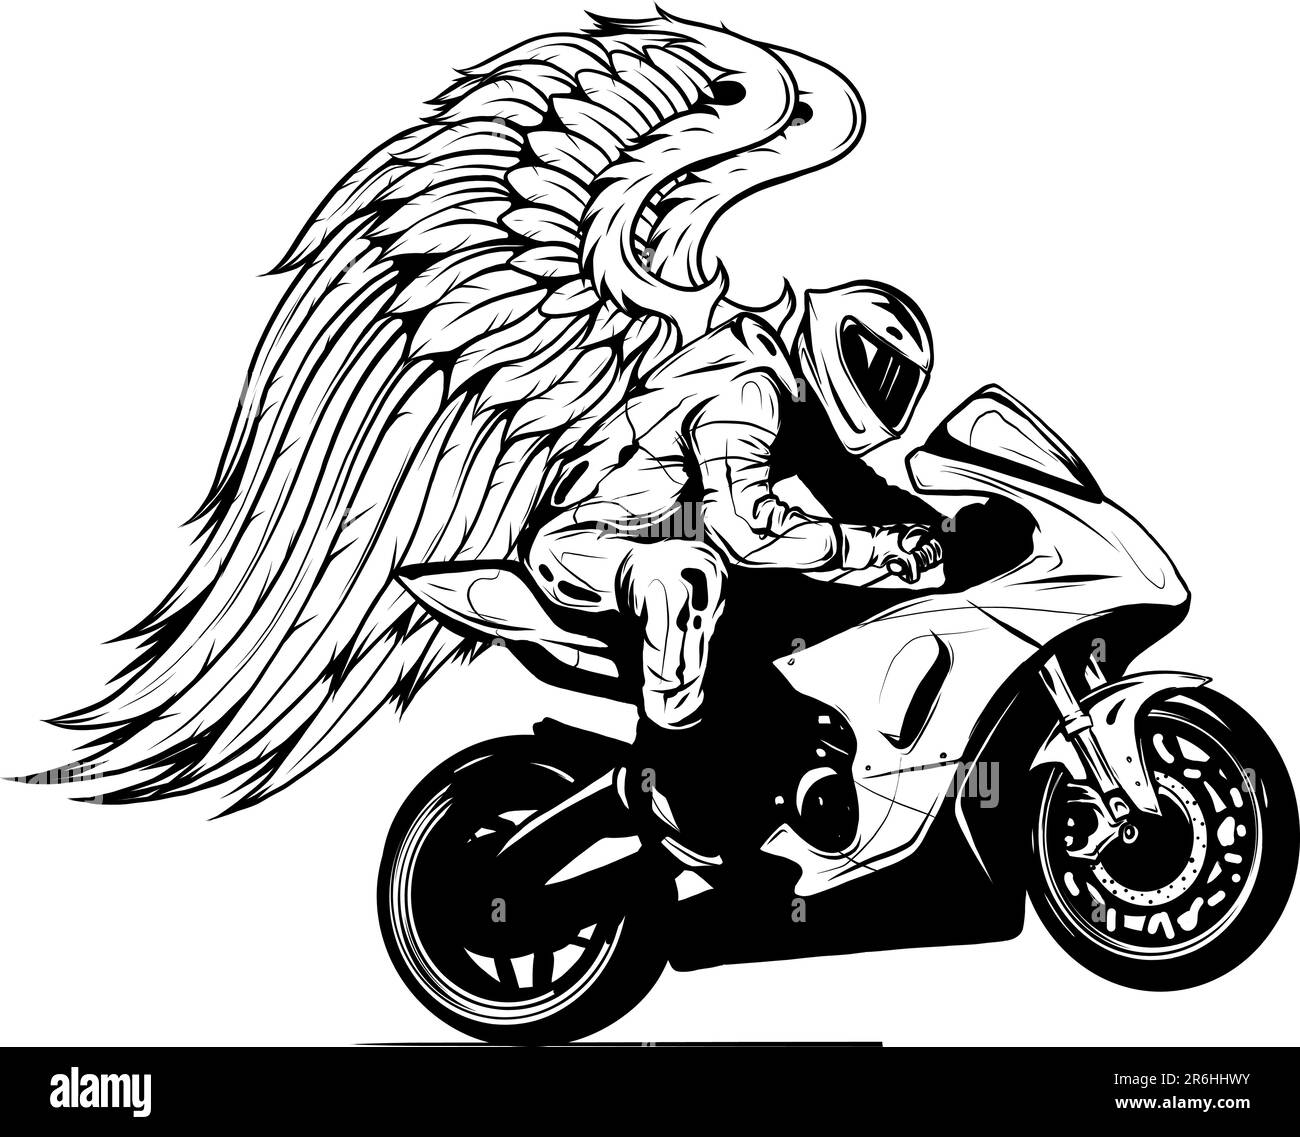 Illustration De Moto Sur Le Fond Blanc Motocyclette à Ailes Illustration de  Vecteur - Illustration du coutume, concurrence: 103767531